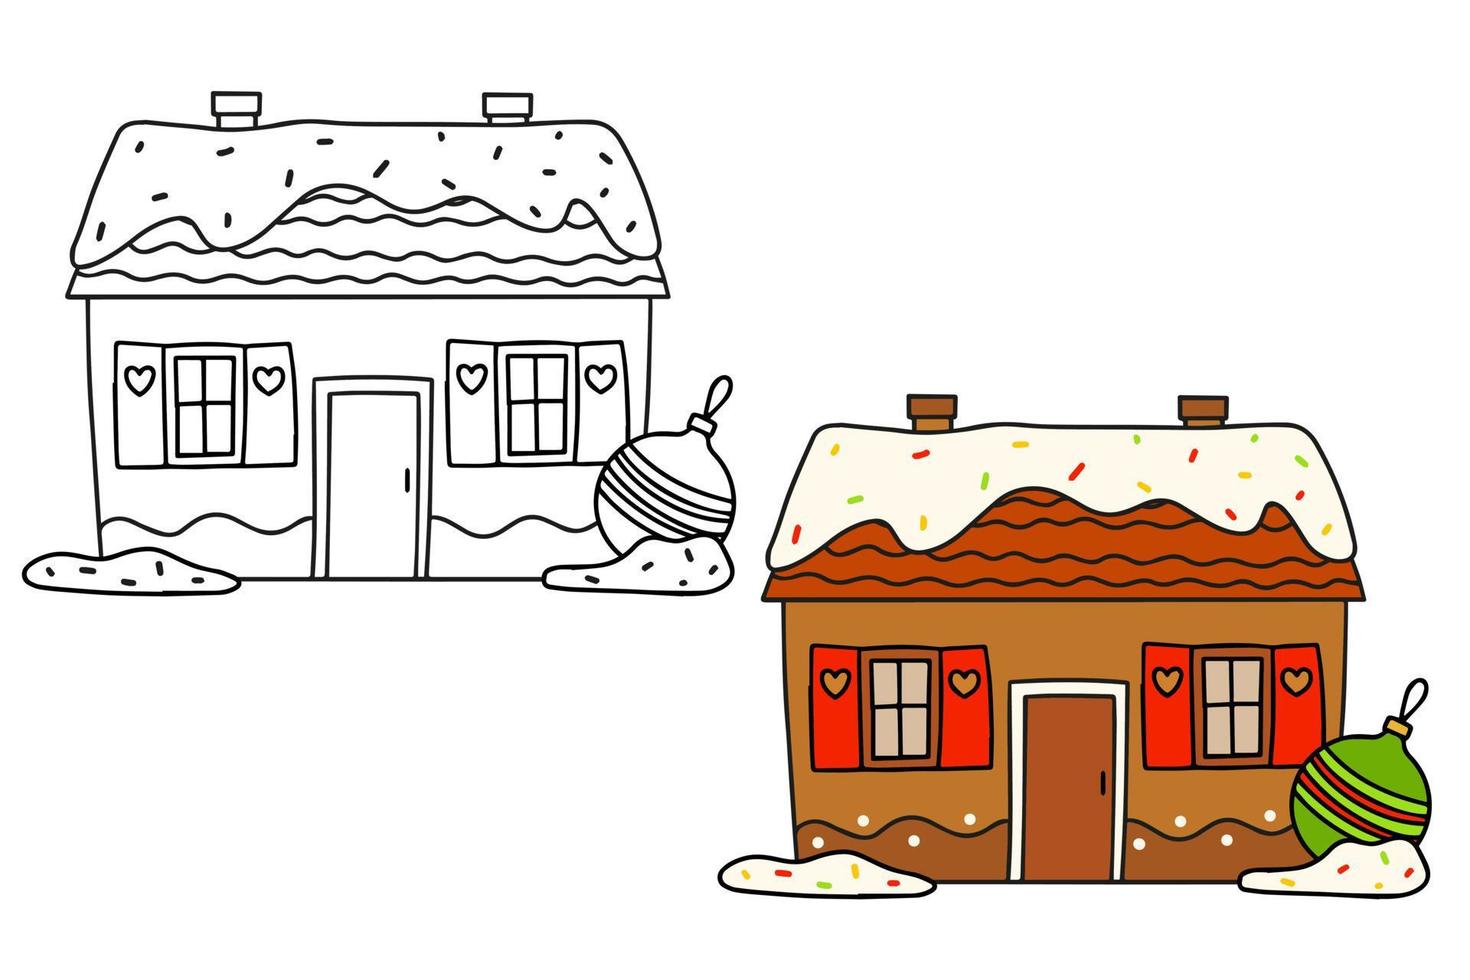 casa de pan de jengibre de navidad y una bola de cristal. ilustración de contorno en blanco y negro y en color sobre un fondo blanco vector